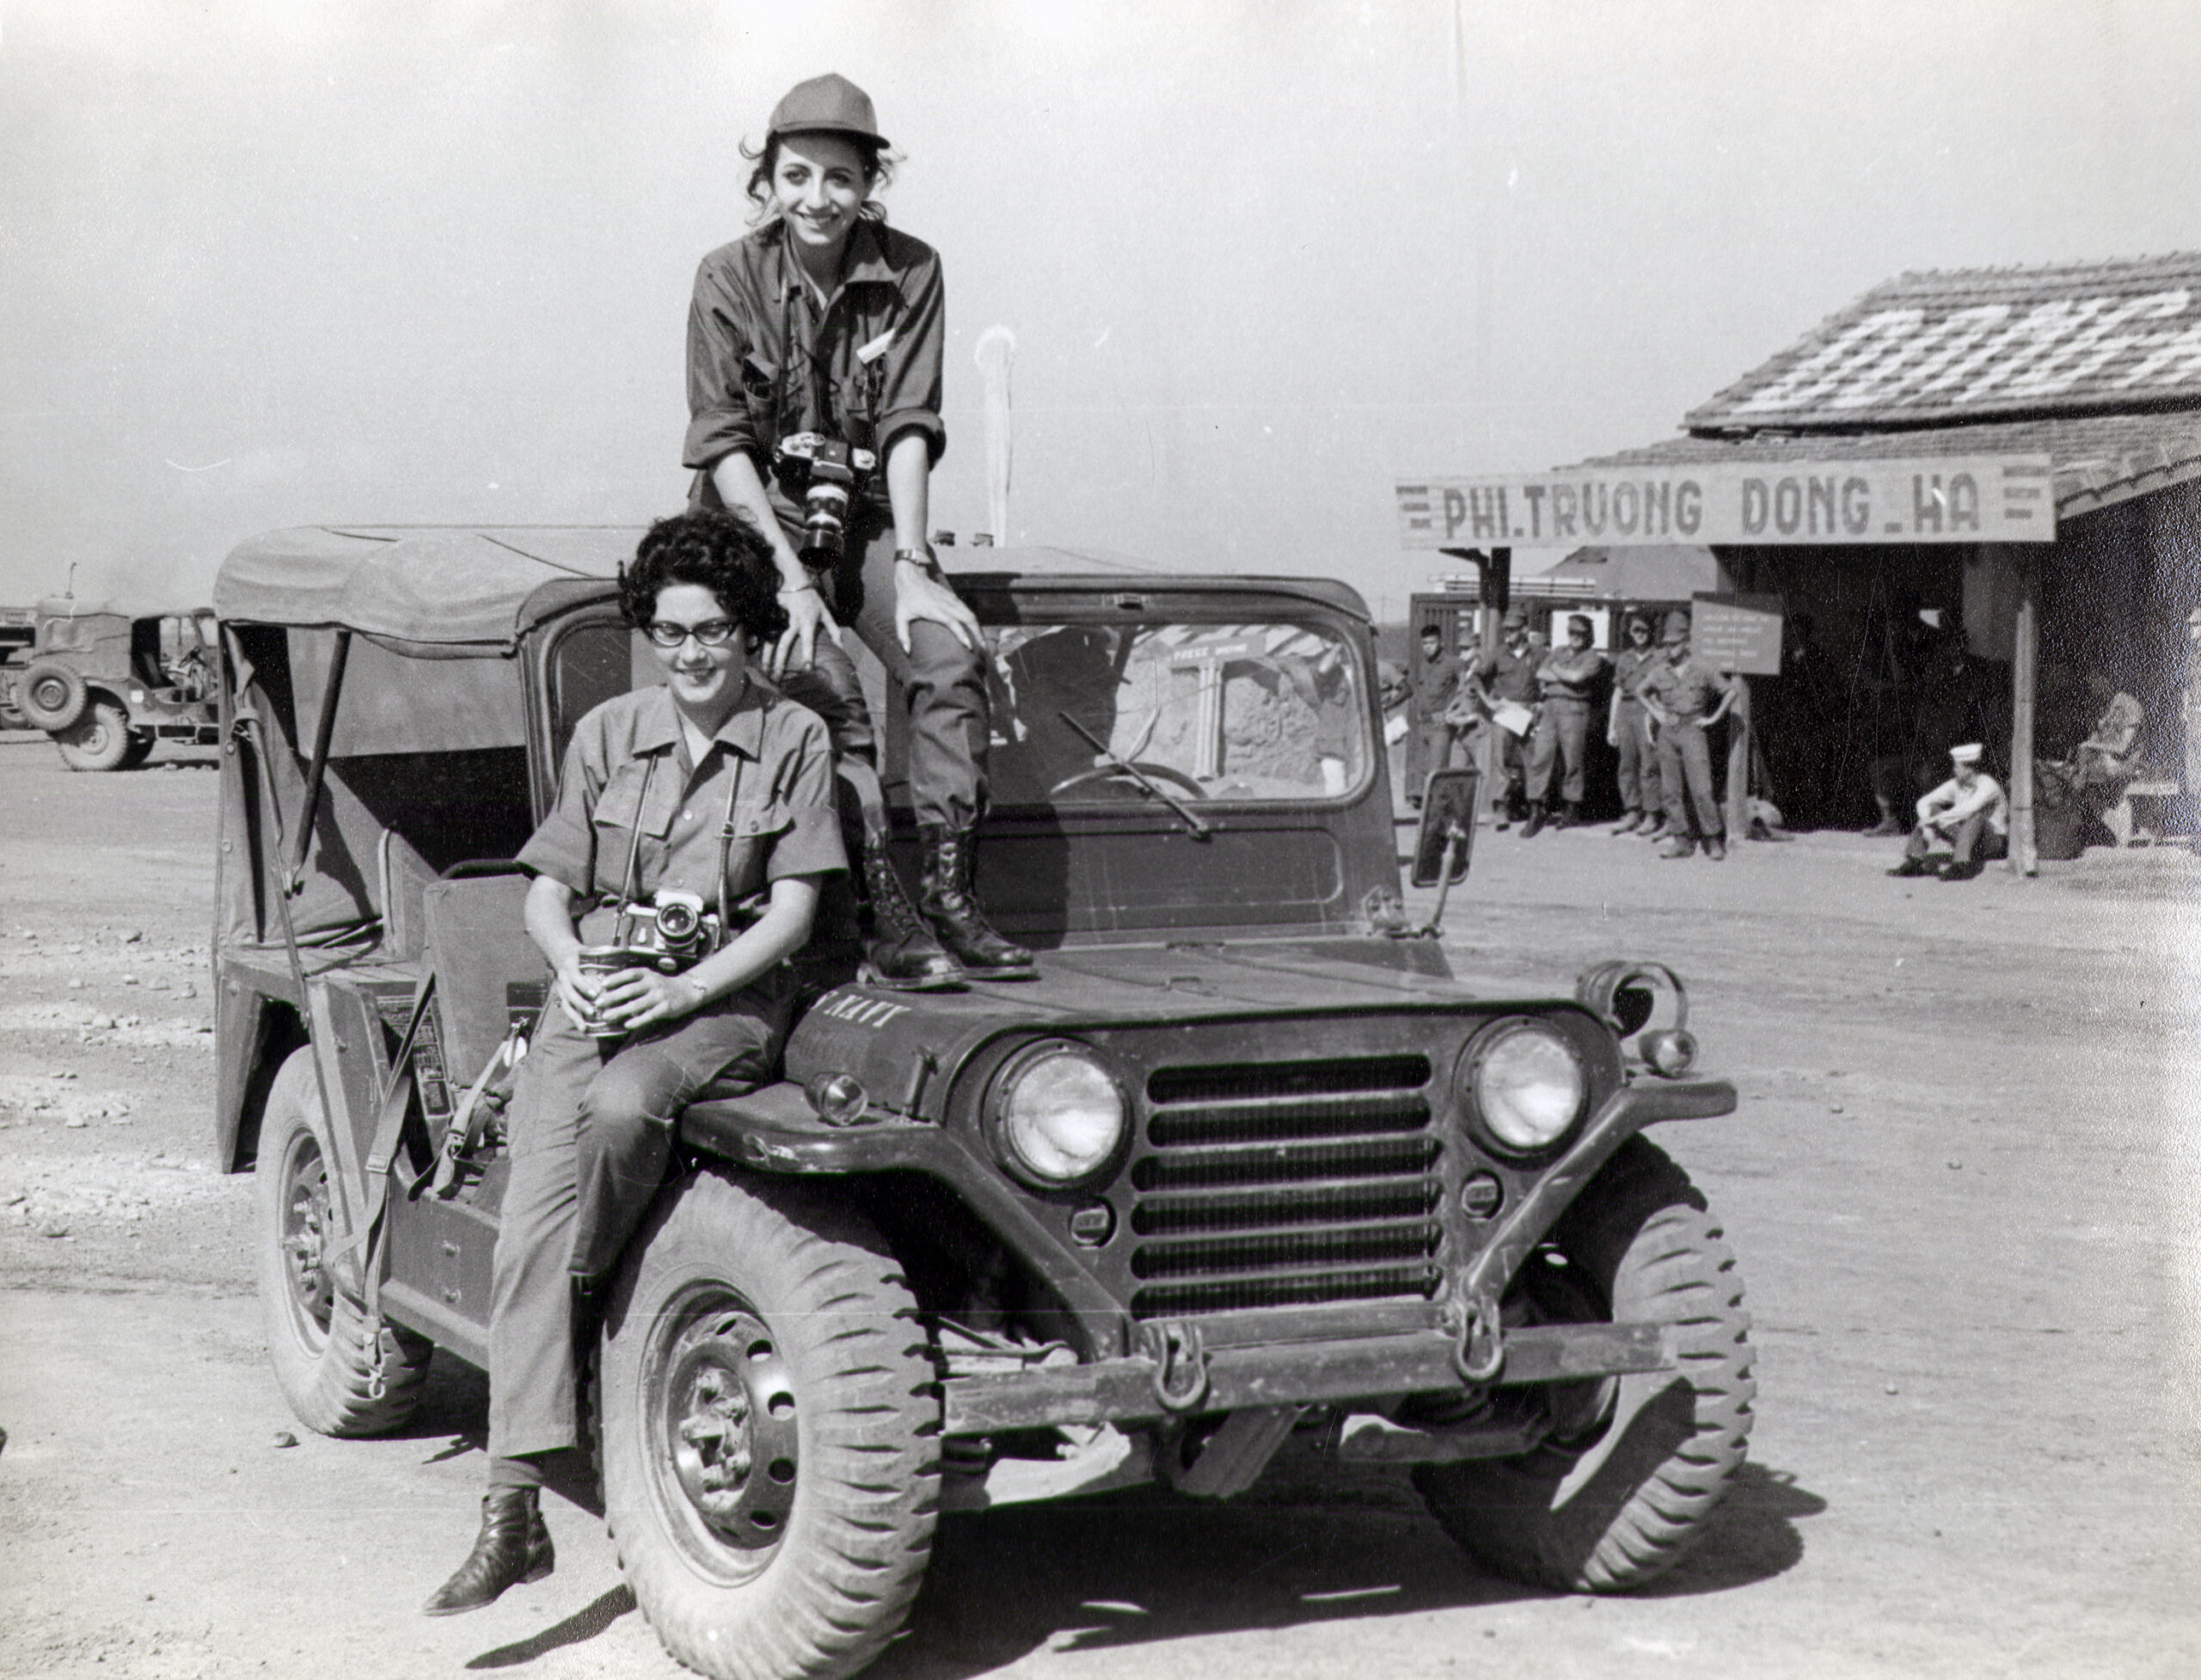 Keever at Đông Hà Combat Base, 1966